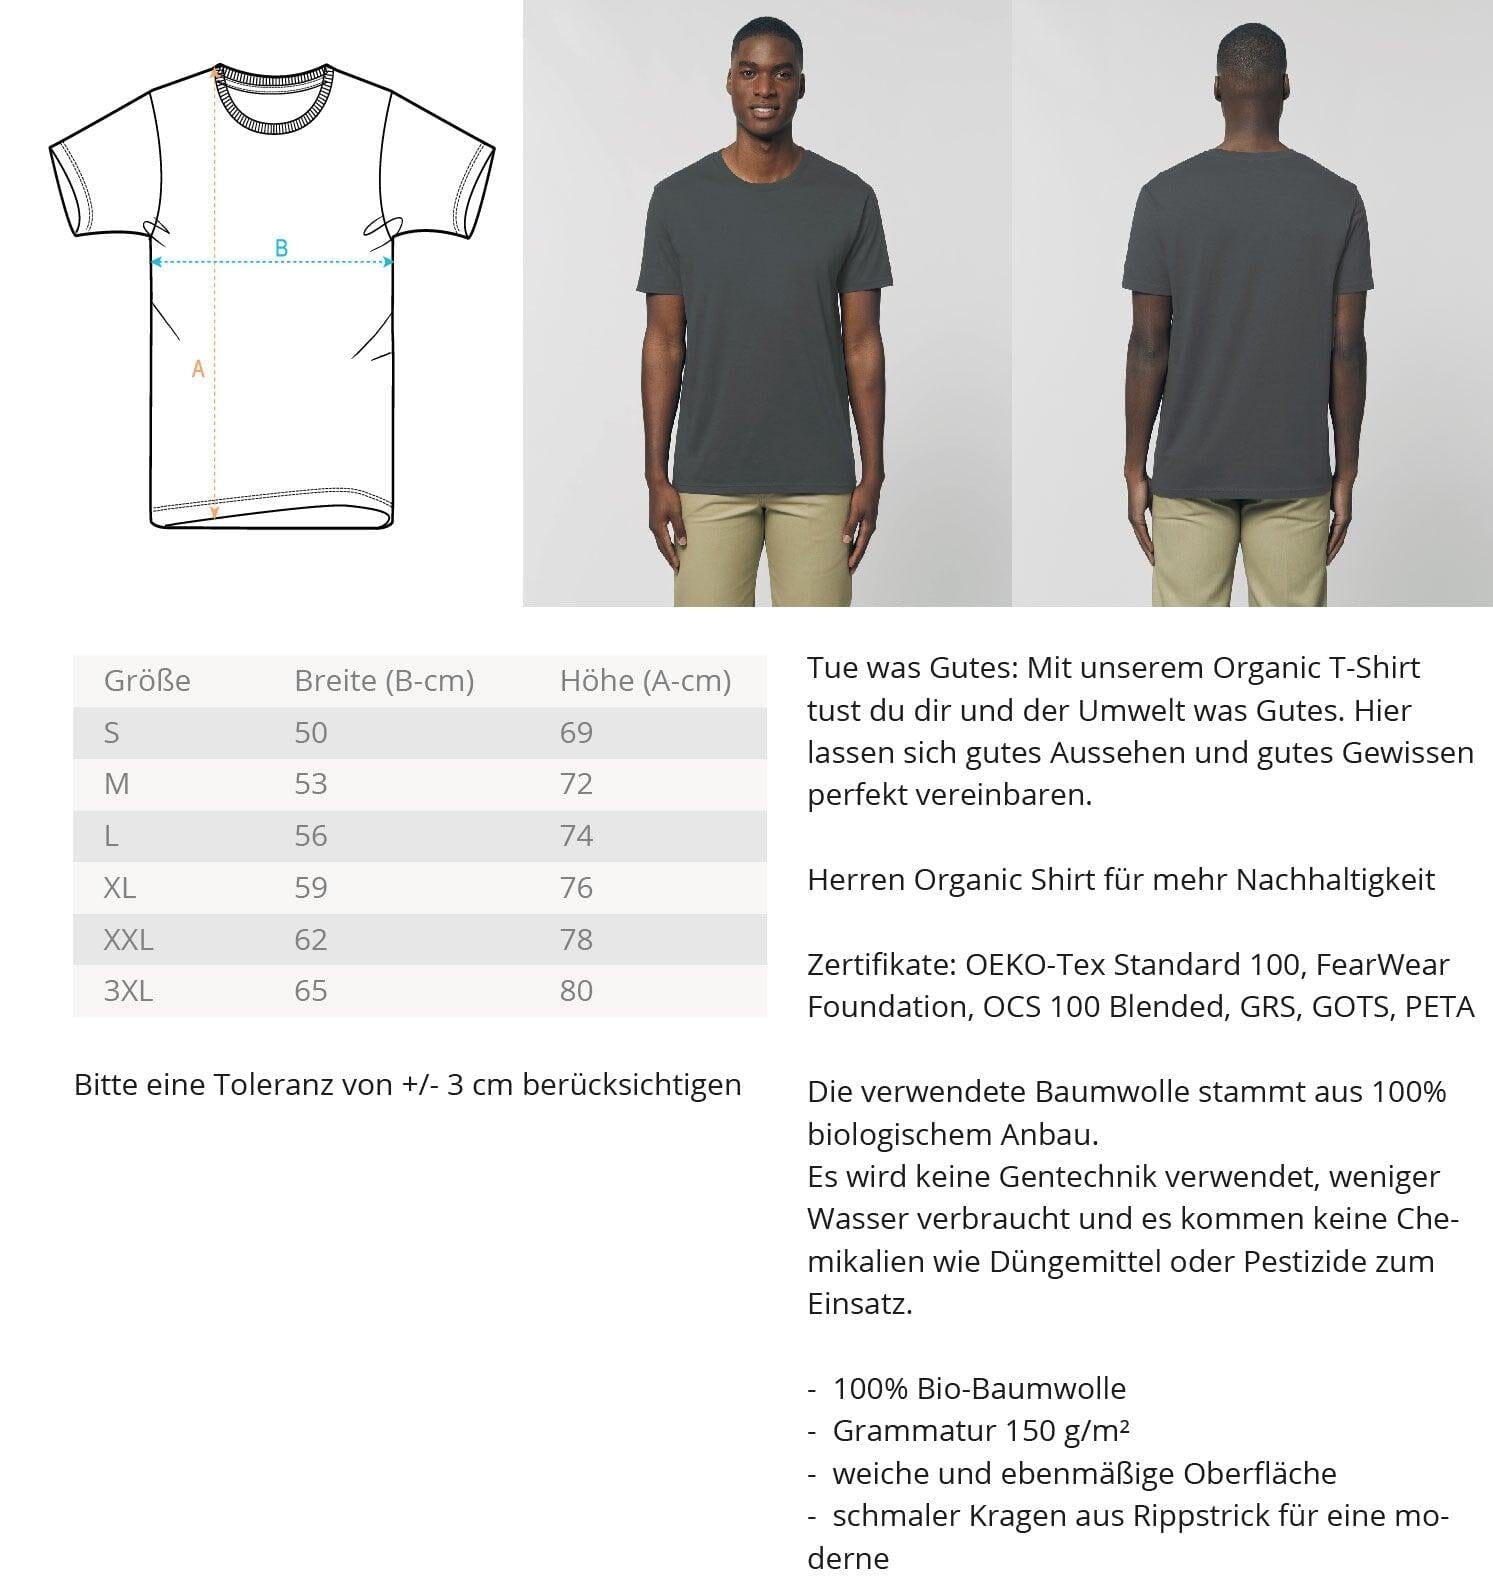 No planet b - Herren Organic Shirt Rocker T-Shirt ST/ST Shirtee 